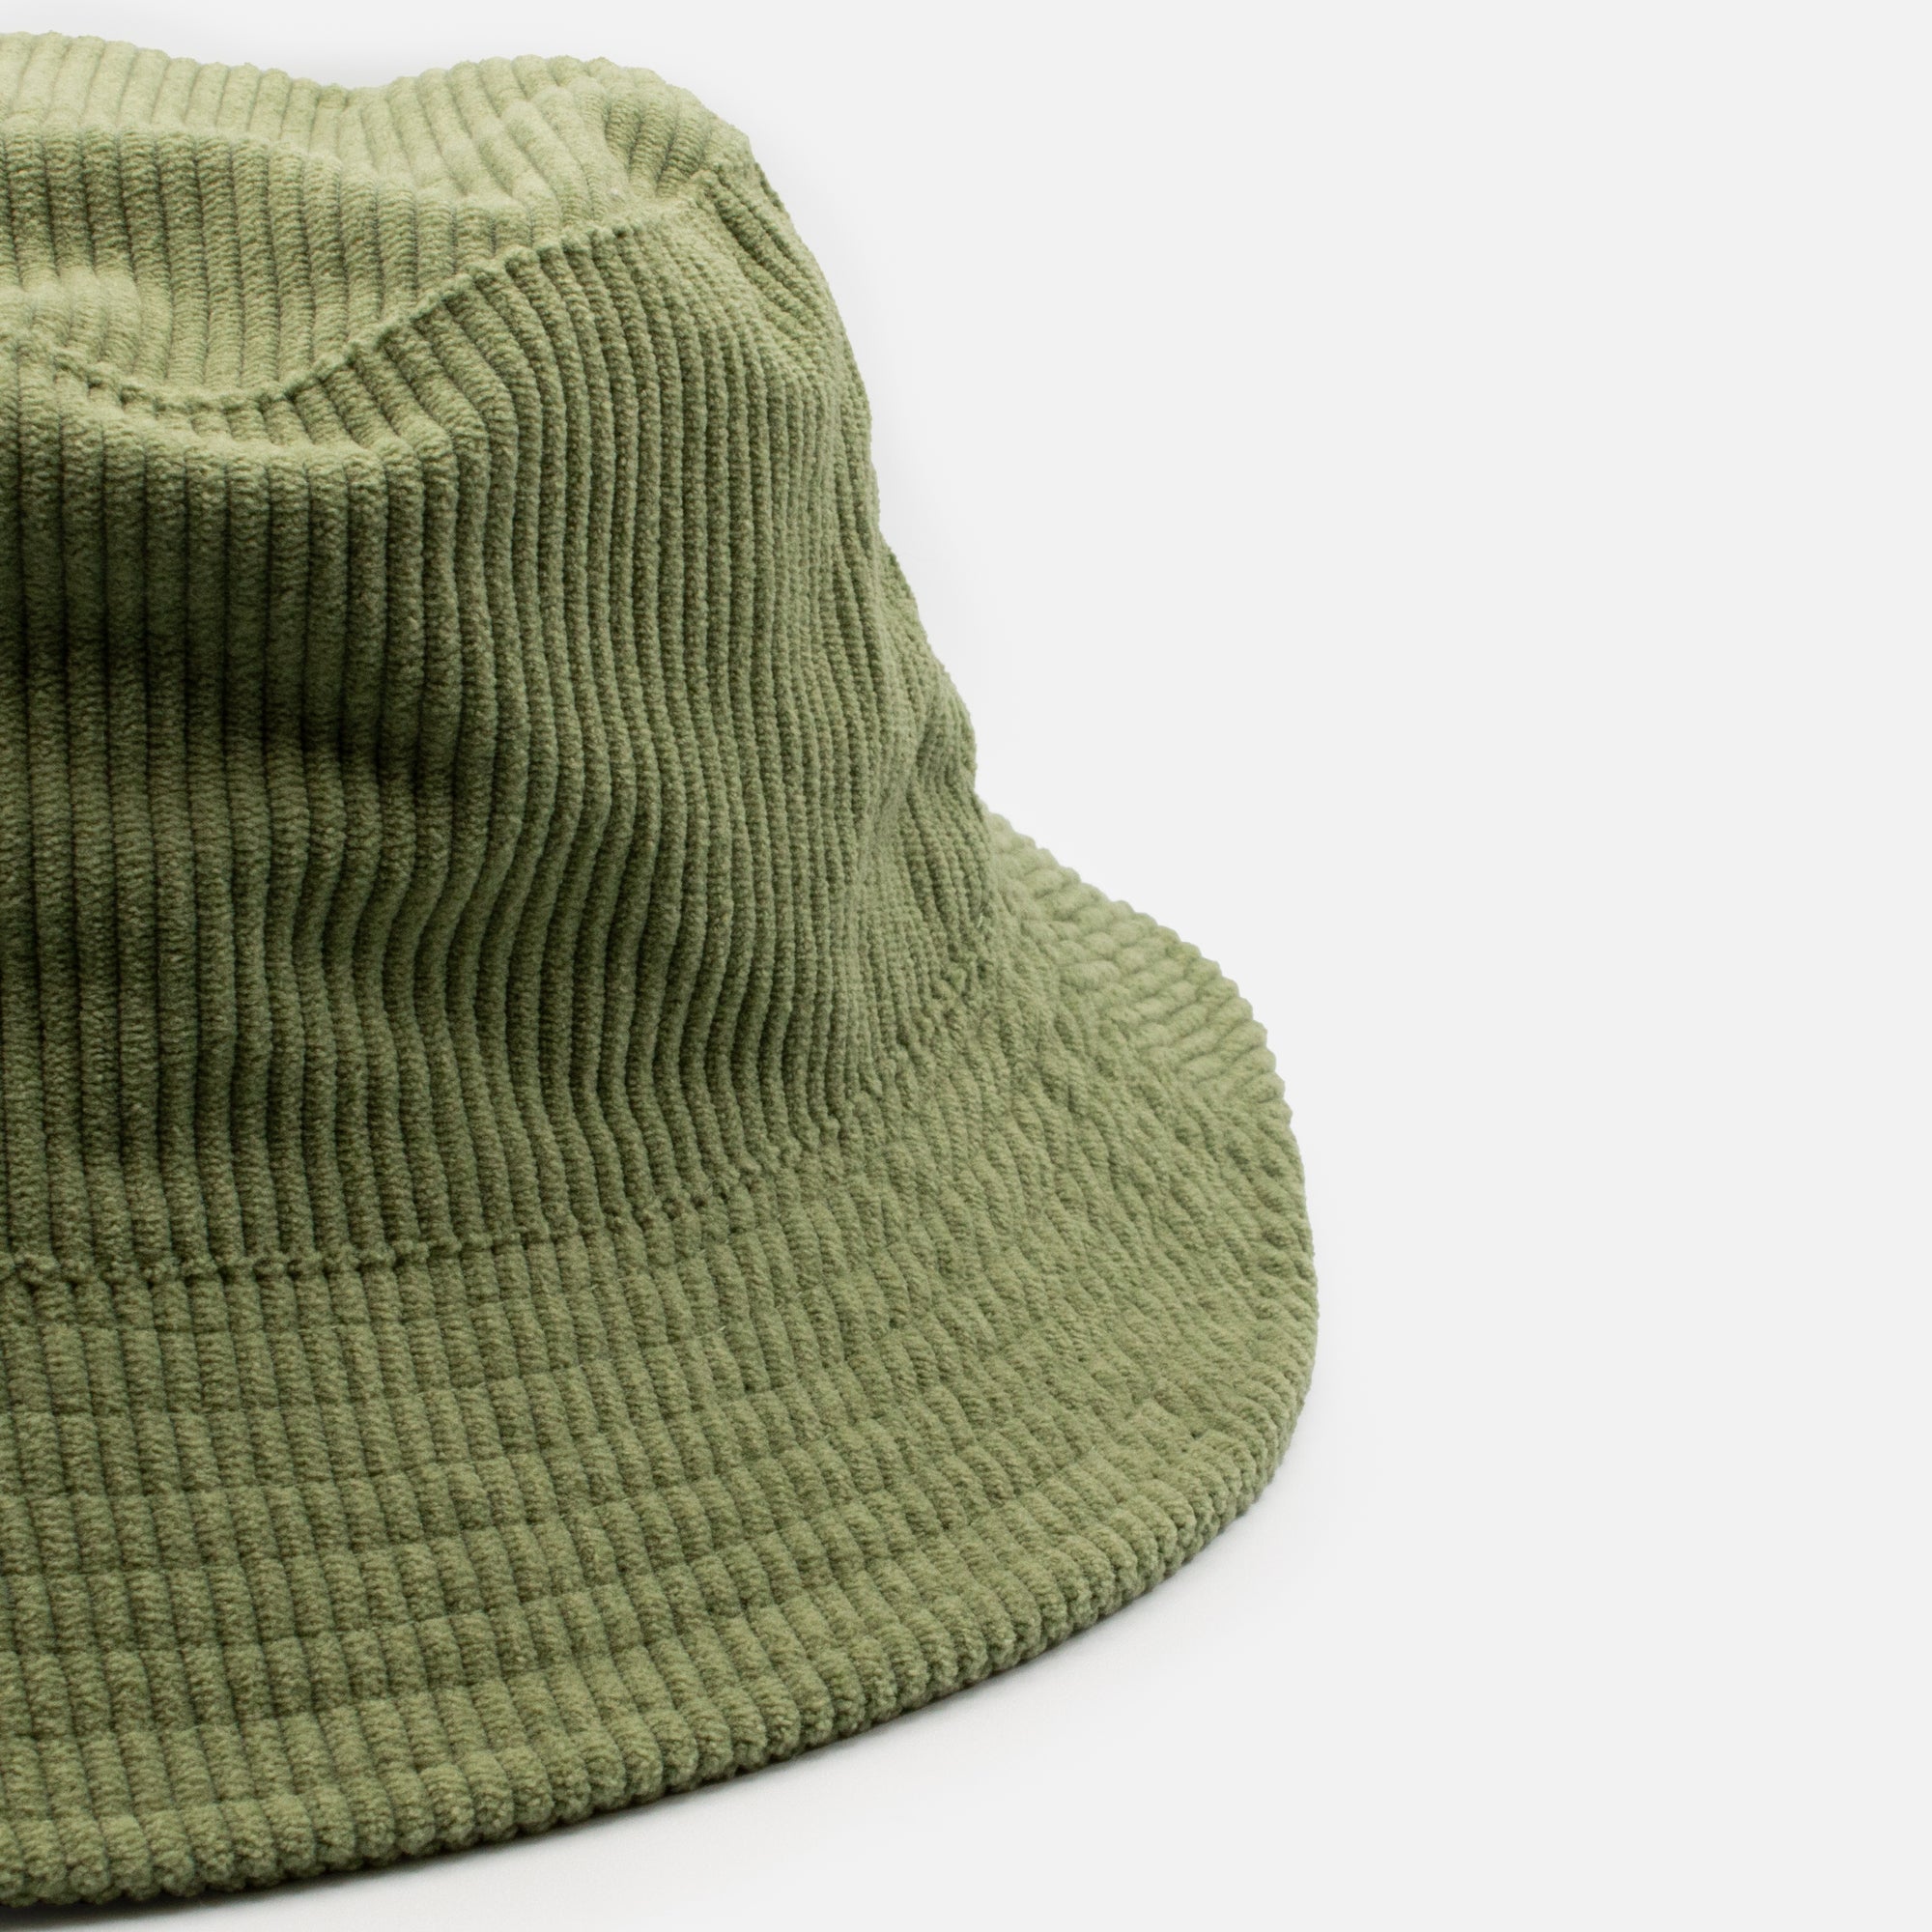 Chapeau cloche côtelé vert